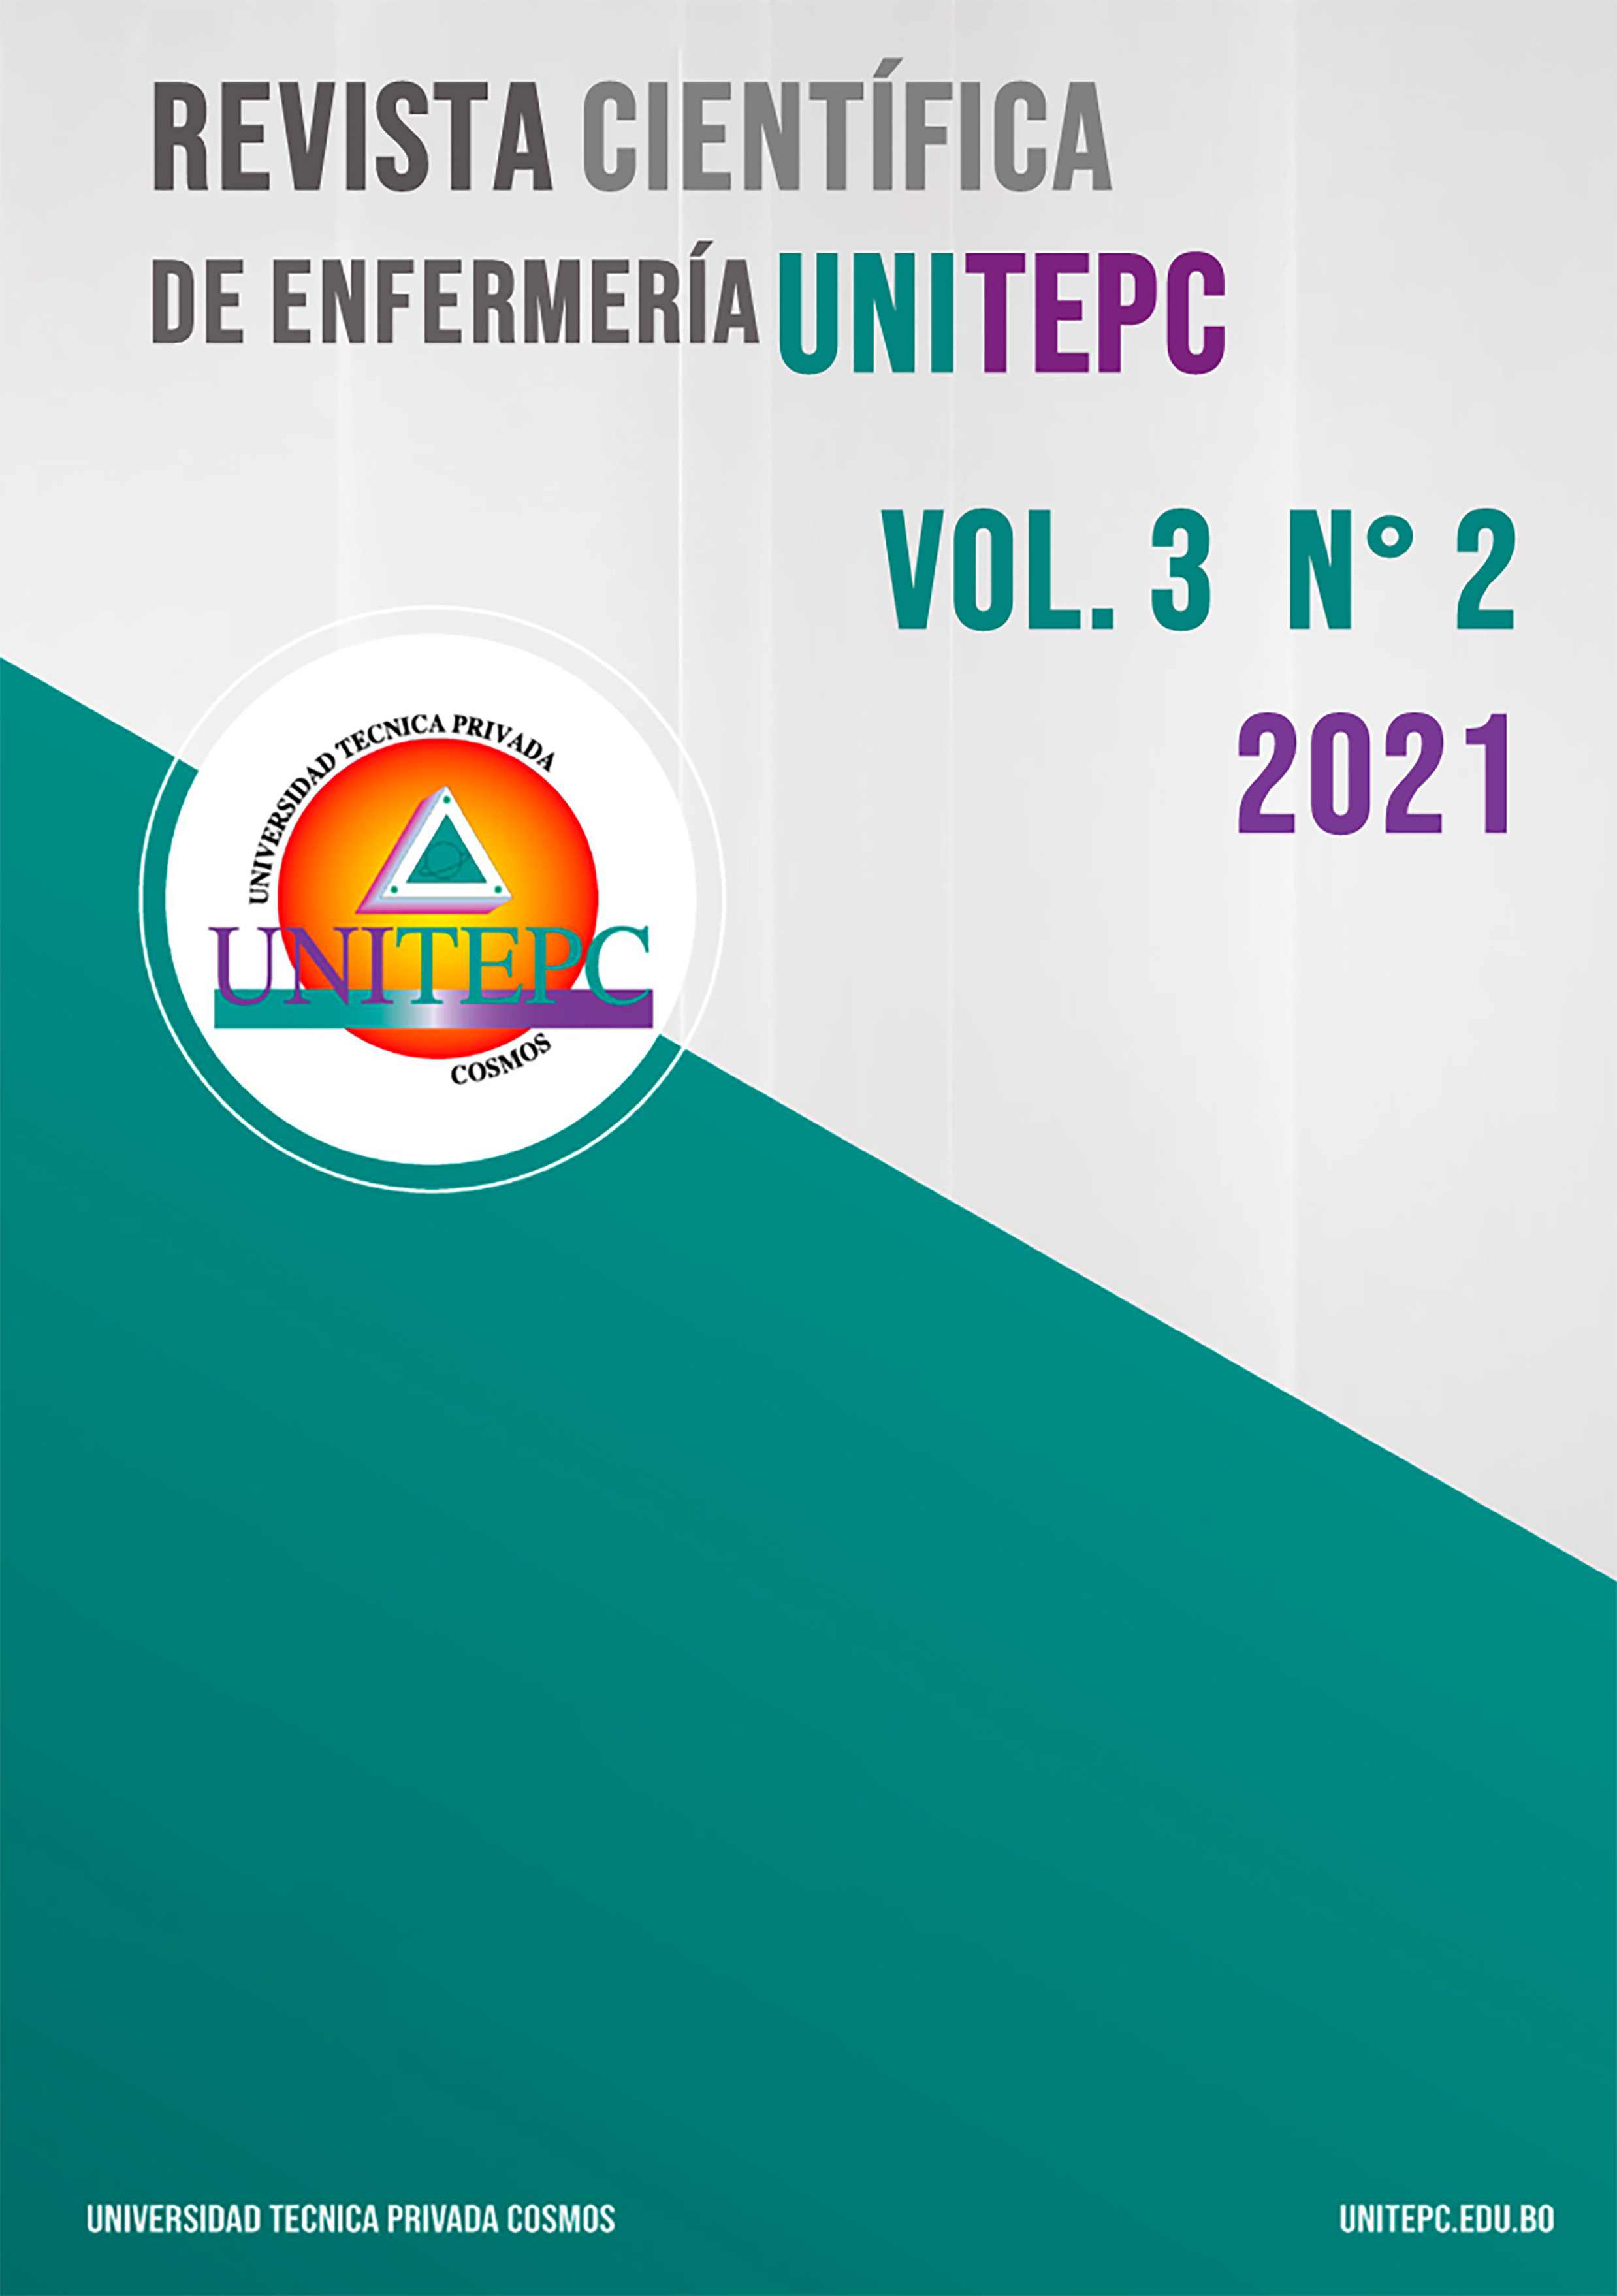 					View Vol. 3 No. 2 (2021): Revista Científica de Enfermería UNITEPC
				